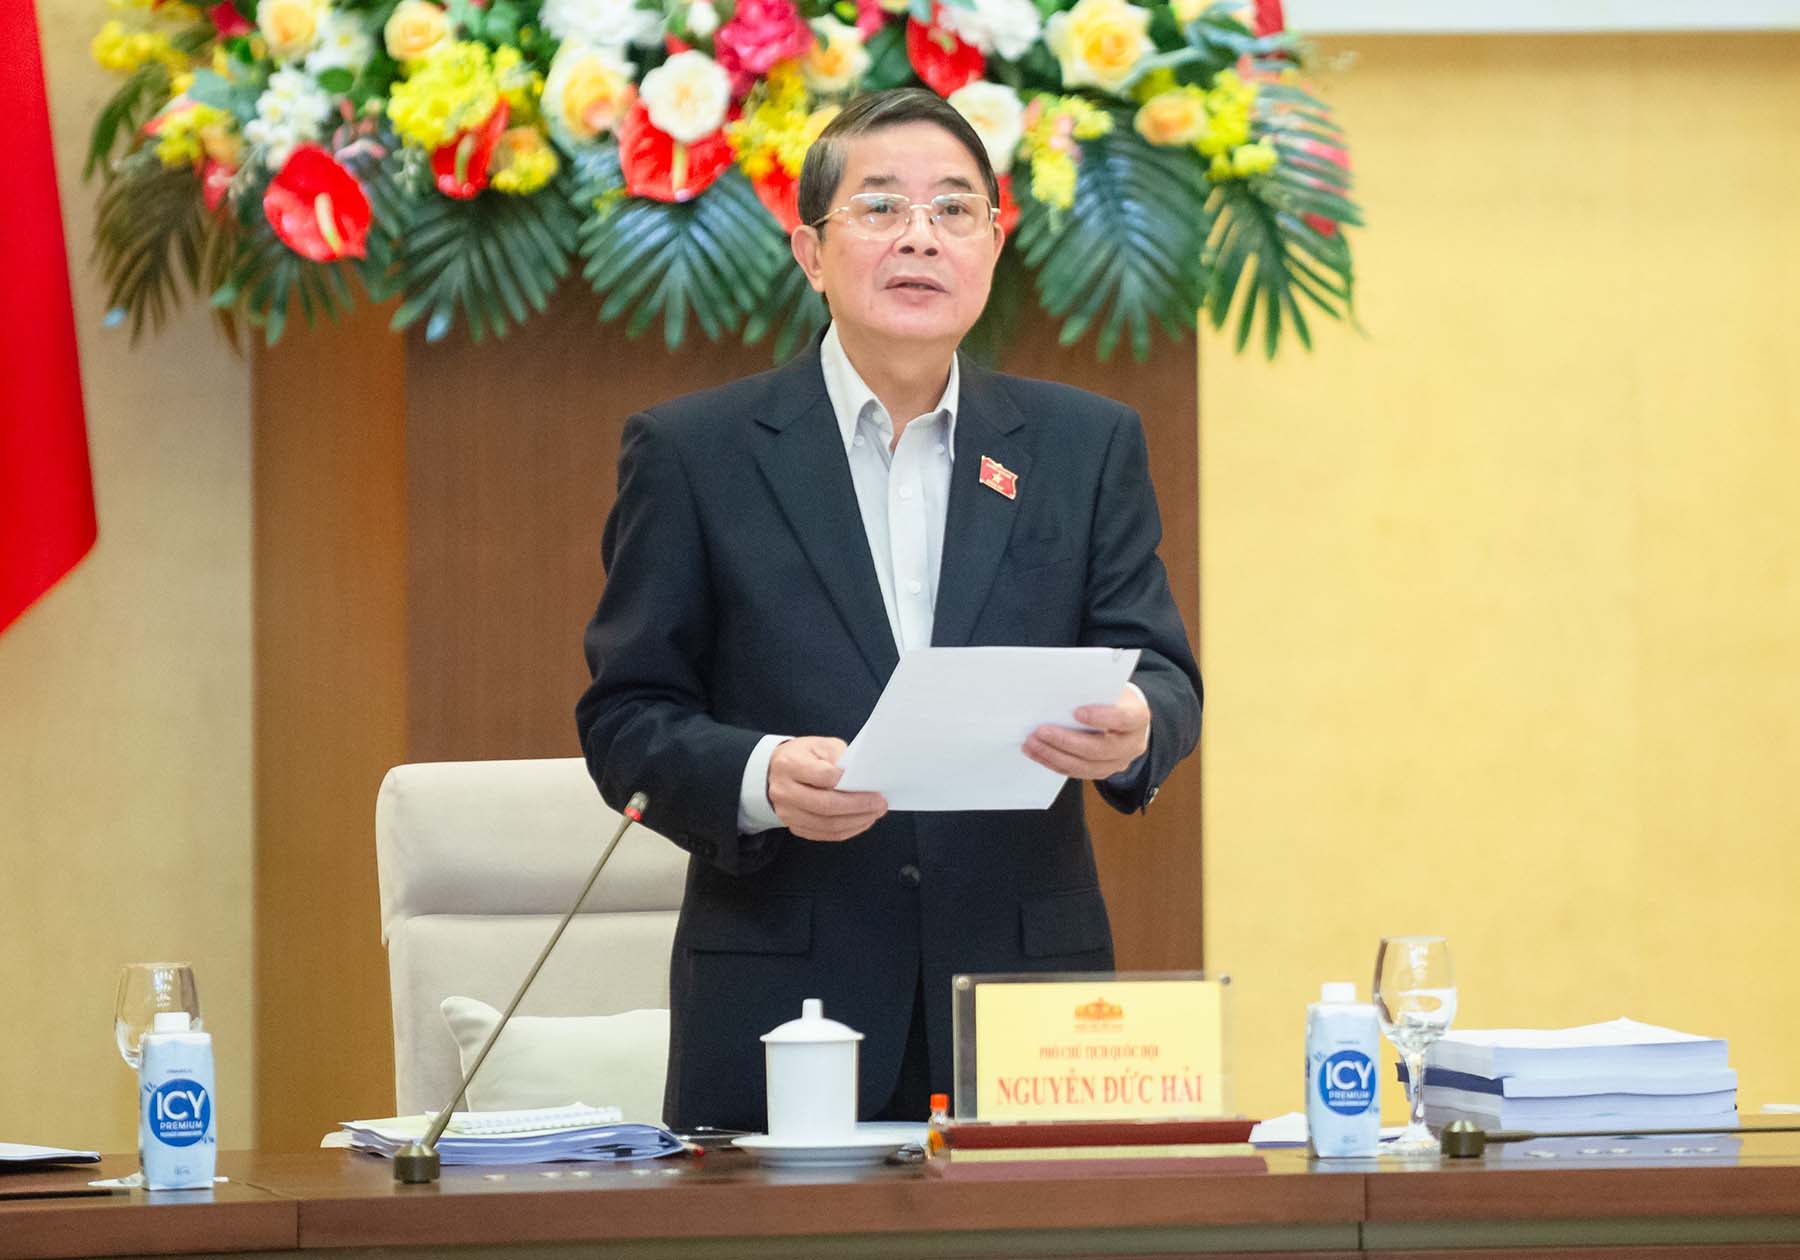 Phó Chủ tịch Quốc hội Nguyễn Đức Hải phát biểu. Ảnh: Trọng Quỳnh/VPQH